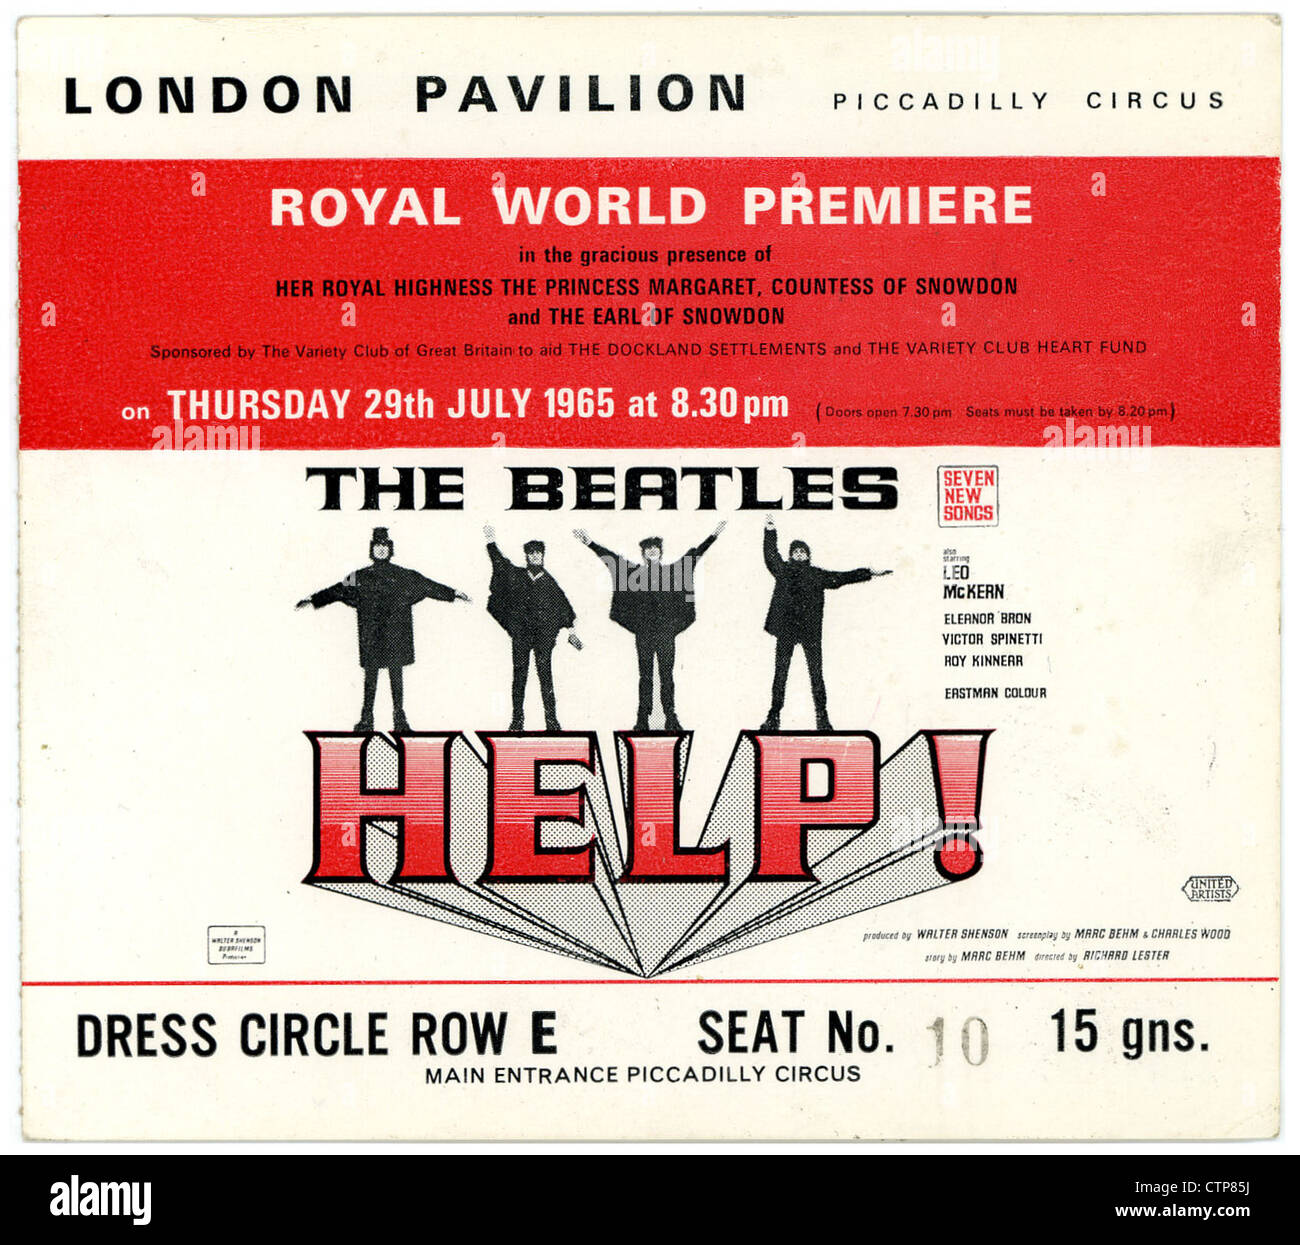 001362 - The Beatles Help ! Royal World Premiere Ticket du London Pavilion, le 29 juillet 1965 Banque D'Images